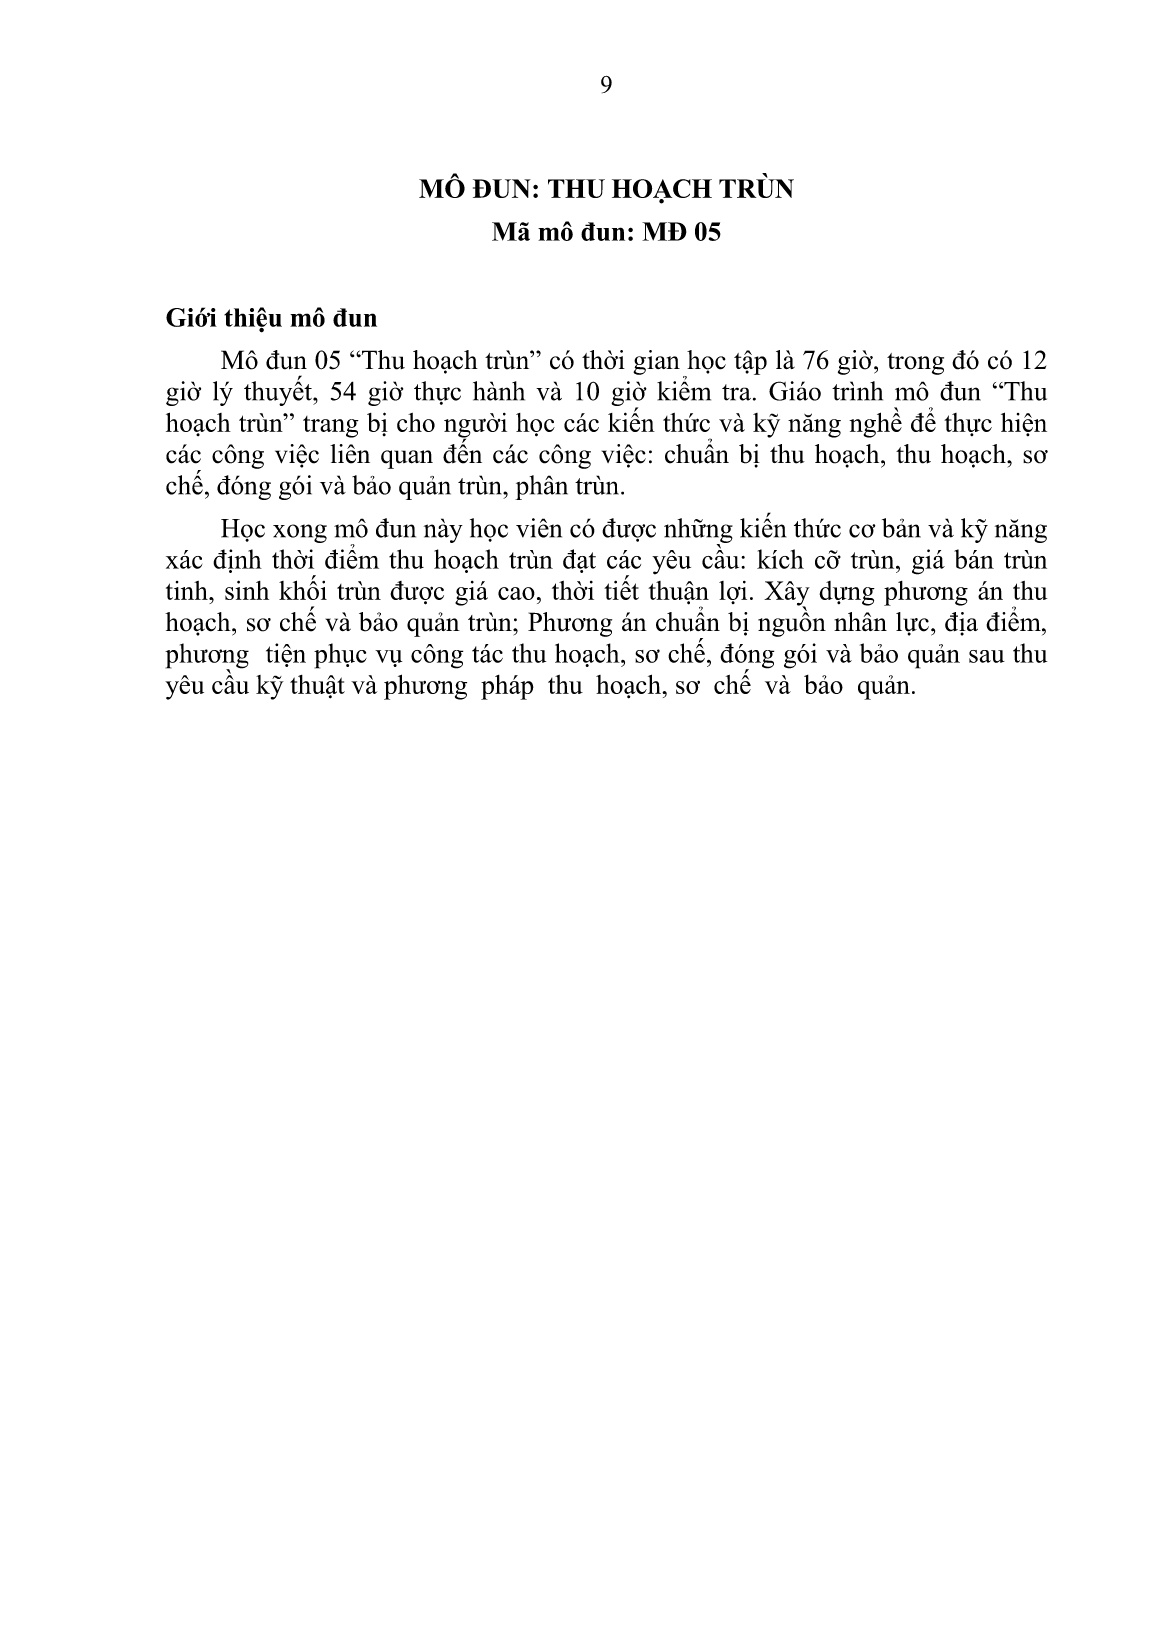 Giáo trình mô đun Thu hoạch trùn quế (Trình độ: Sơ cấp nghề) trang 10